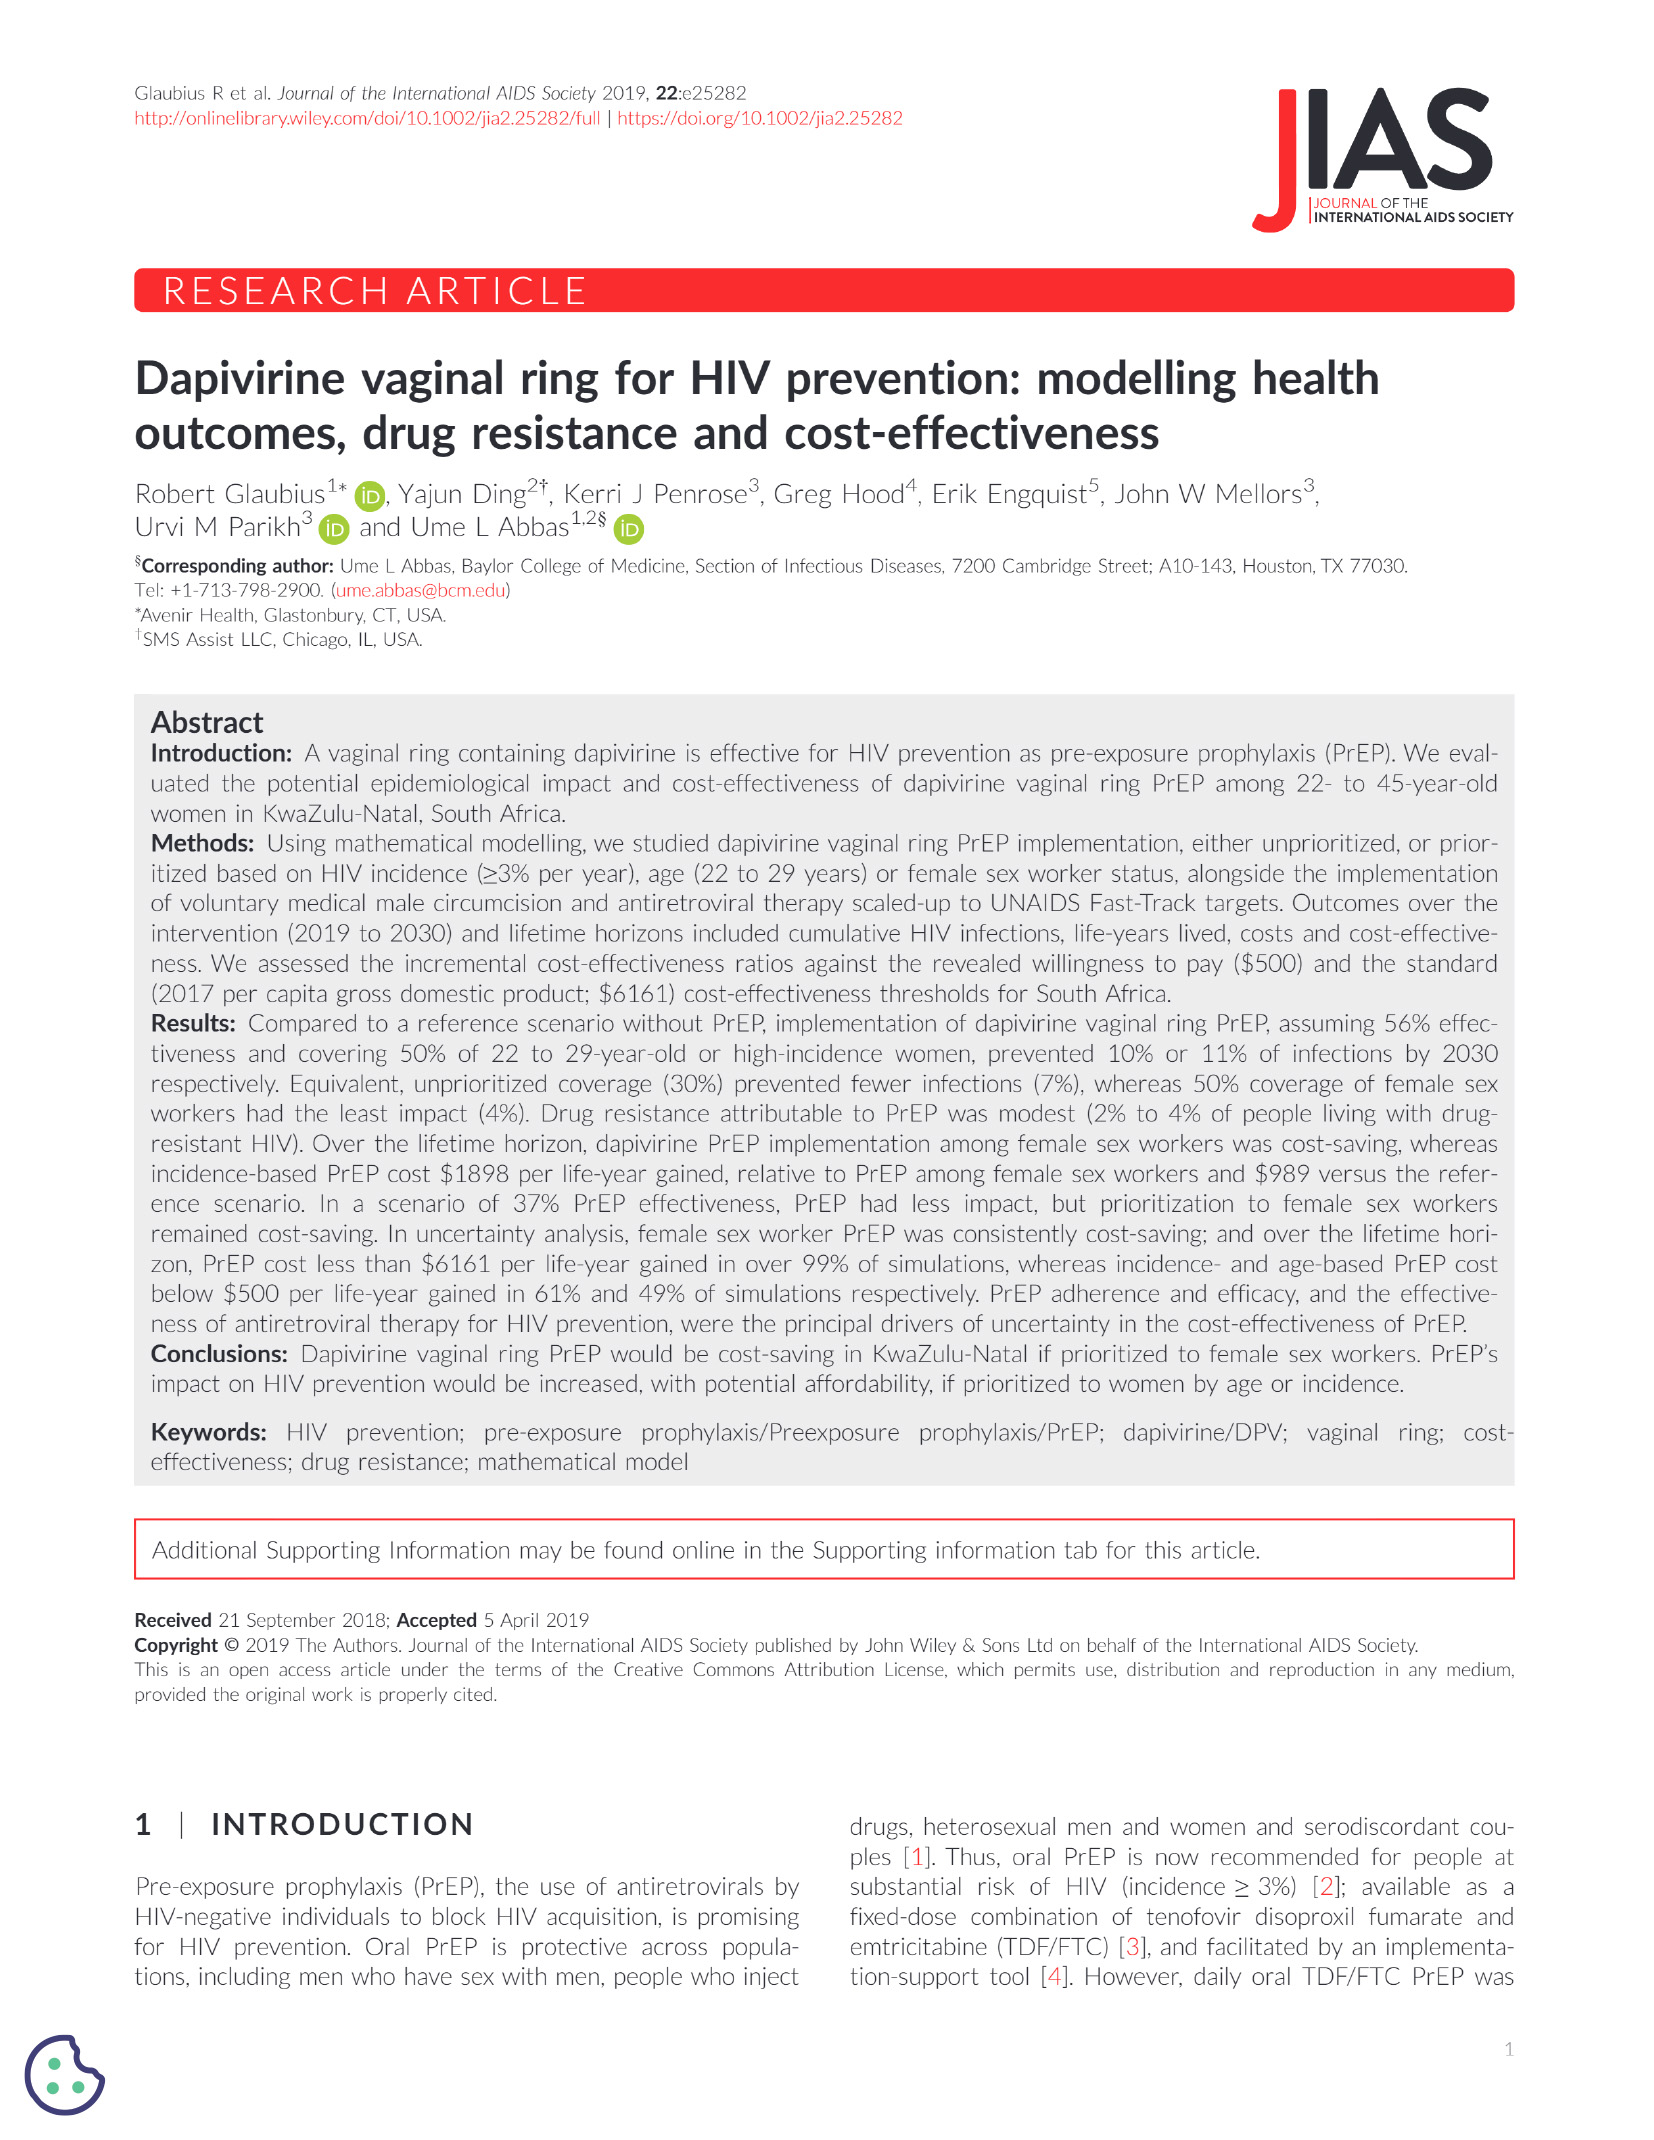 Anel vaginal de dapivirina para a prevenção do VIH: Modelação dos resultados em termos de saúde, resistência aos medicamentos e custo-eficácia - capa